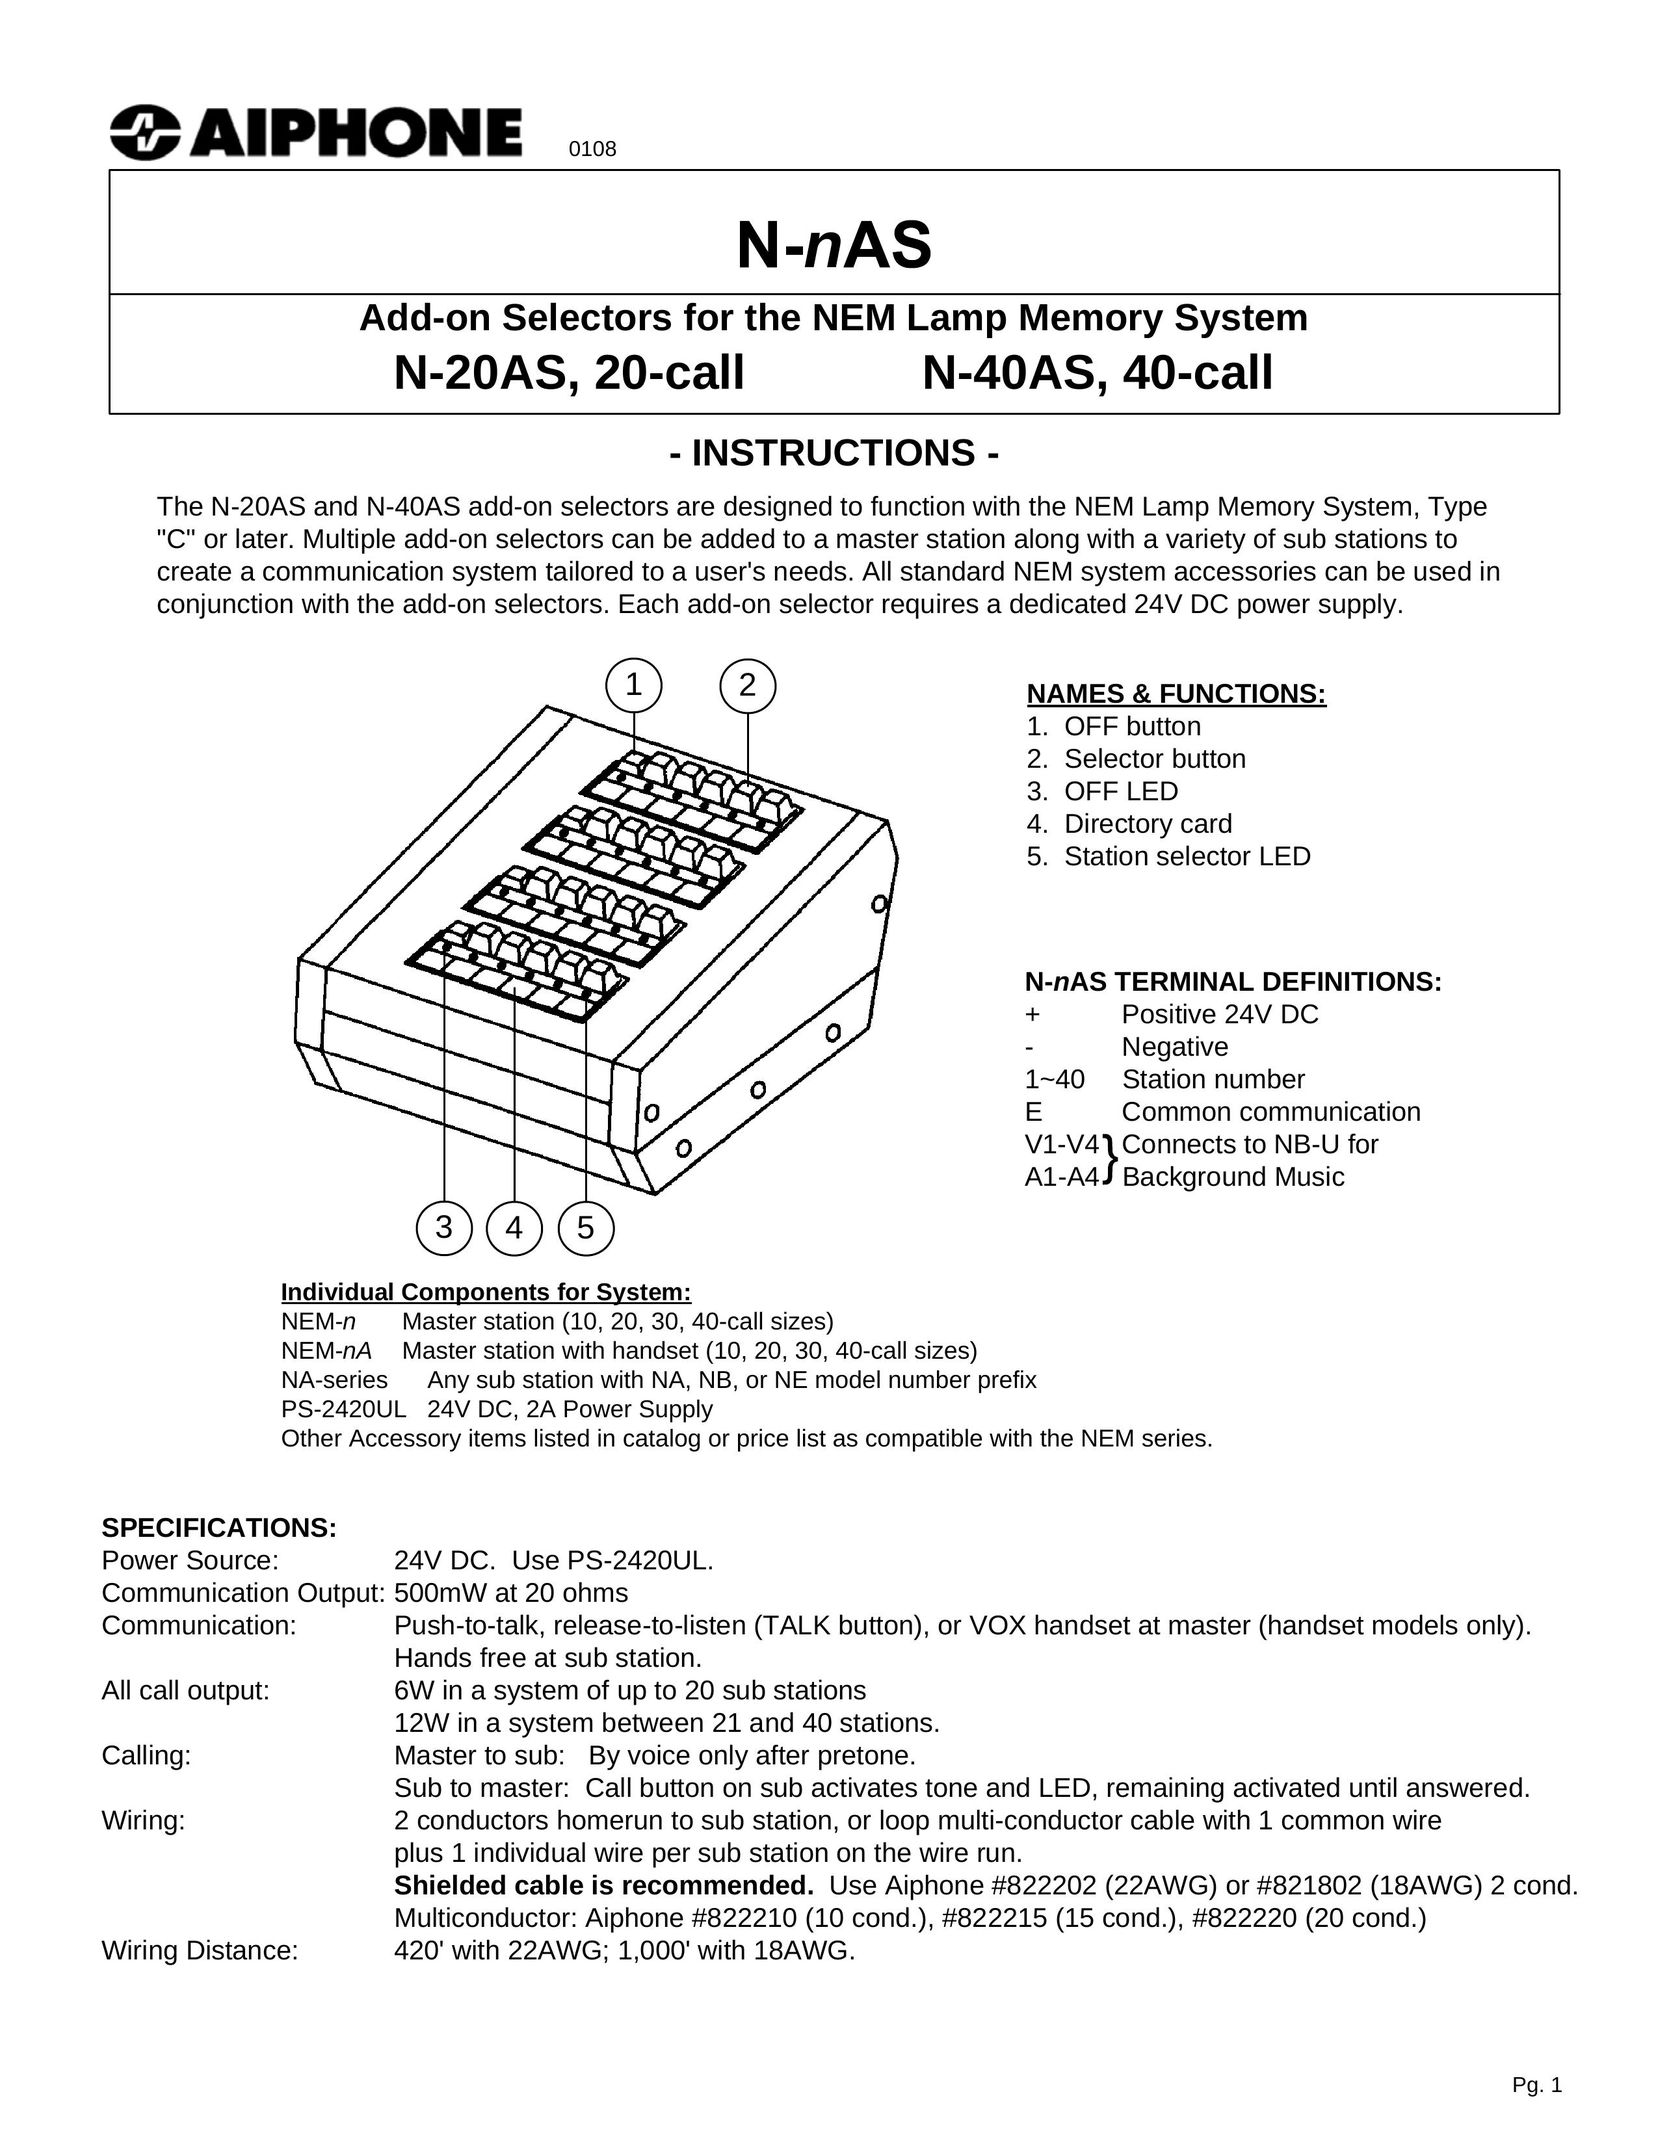 Aiphone N-20AS Indoor Furnishings User Manual